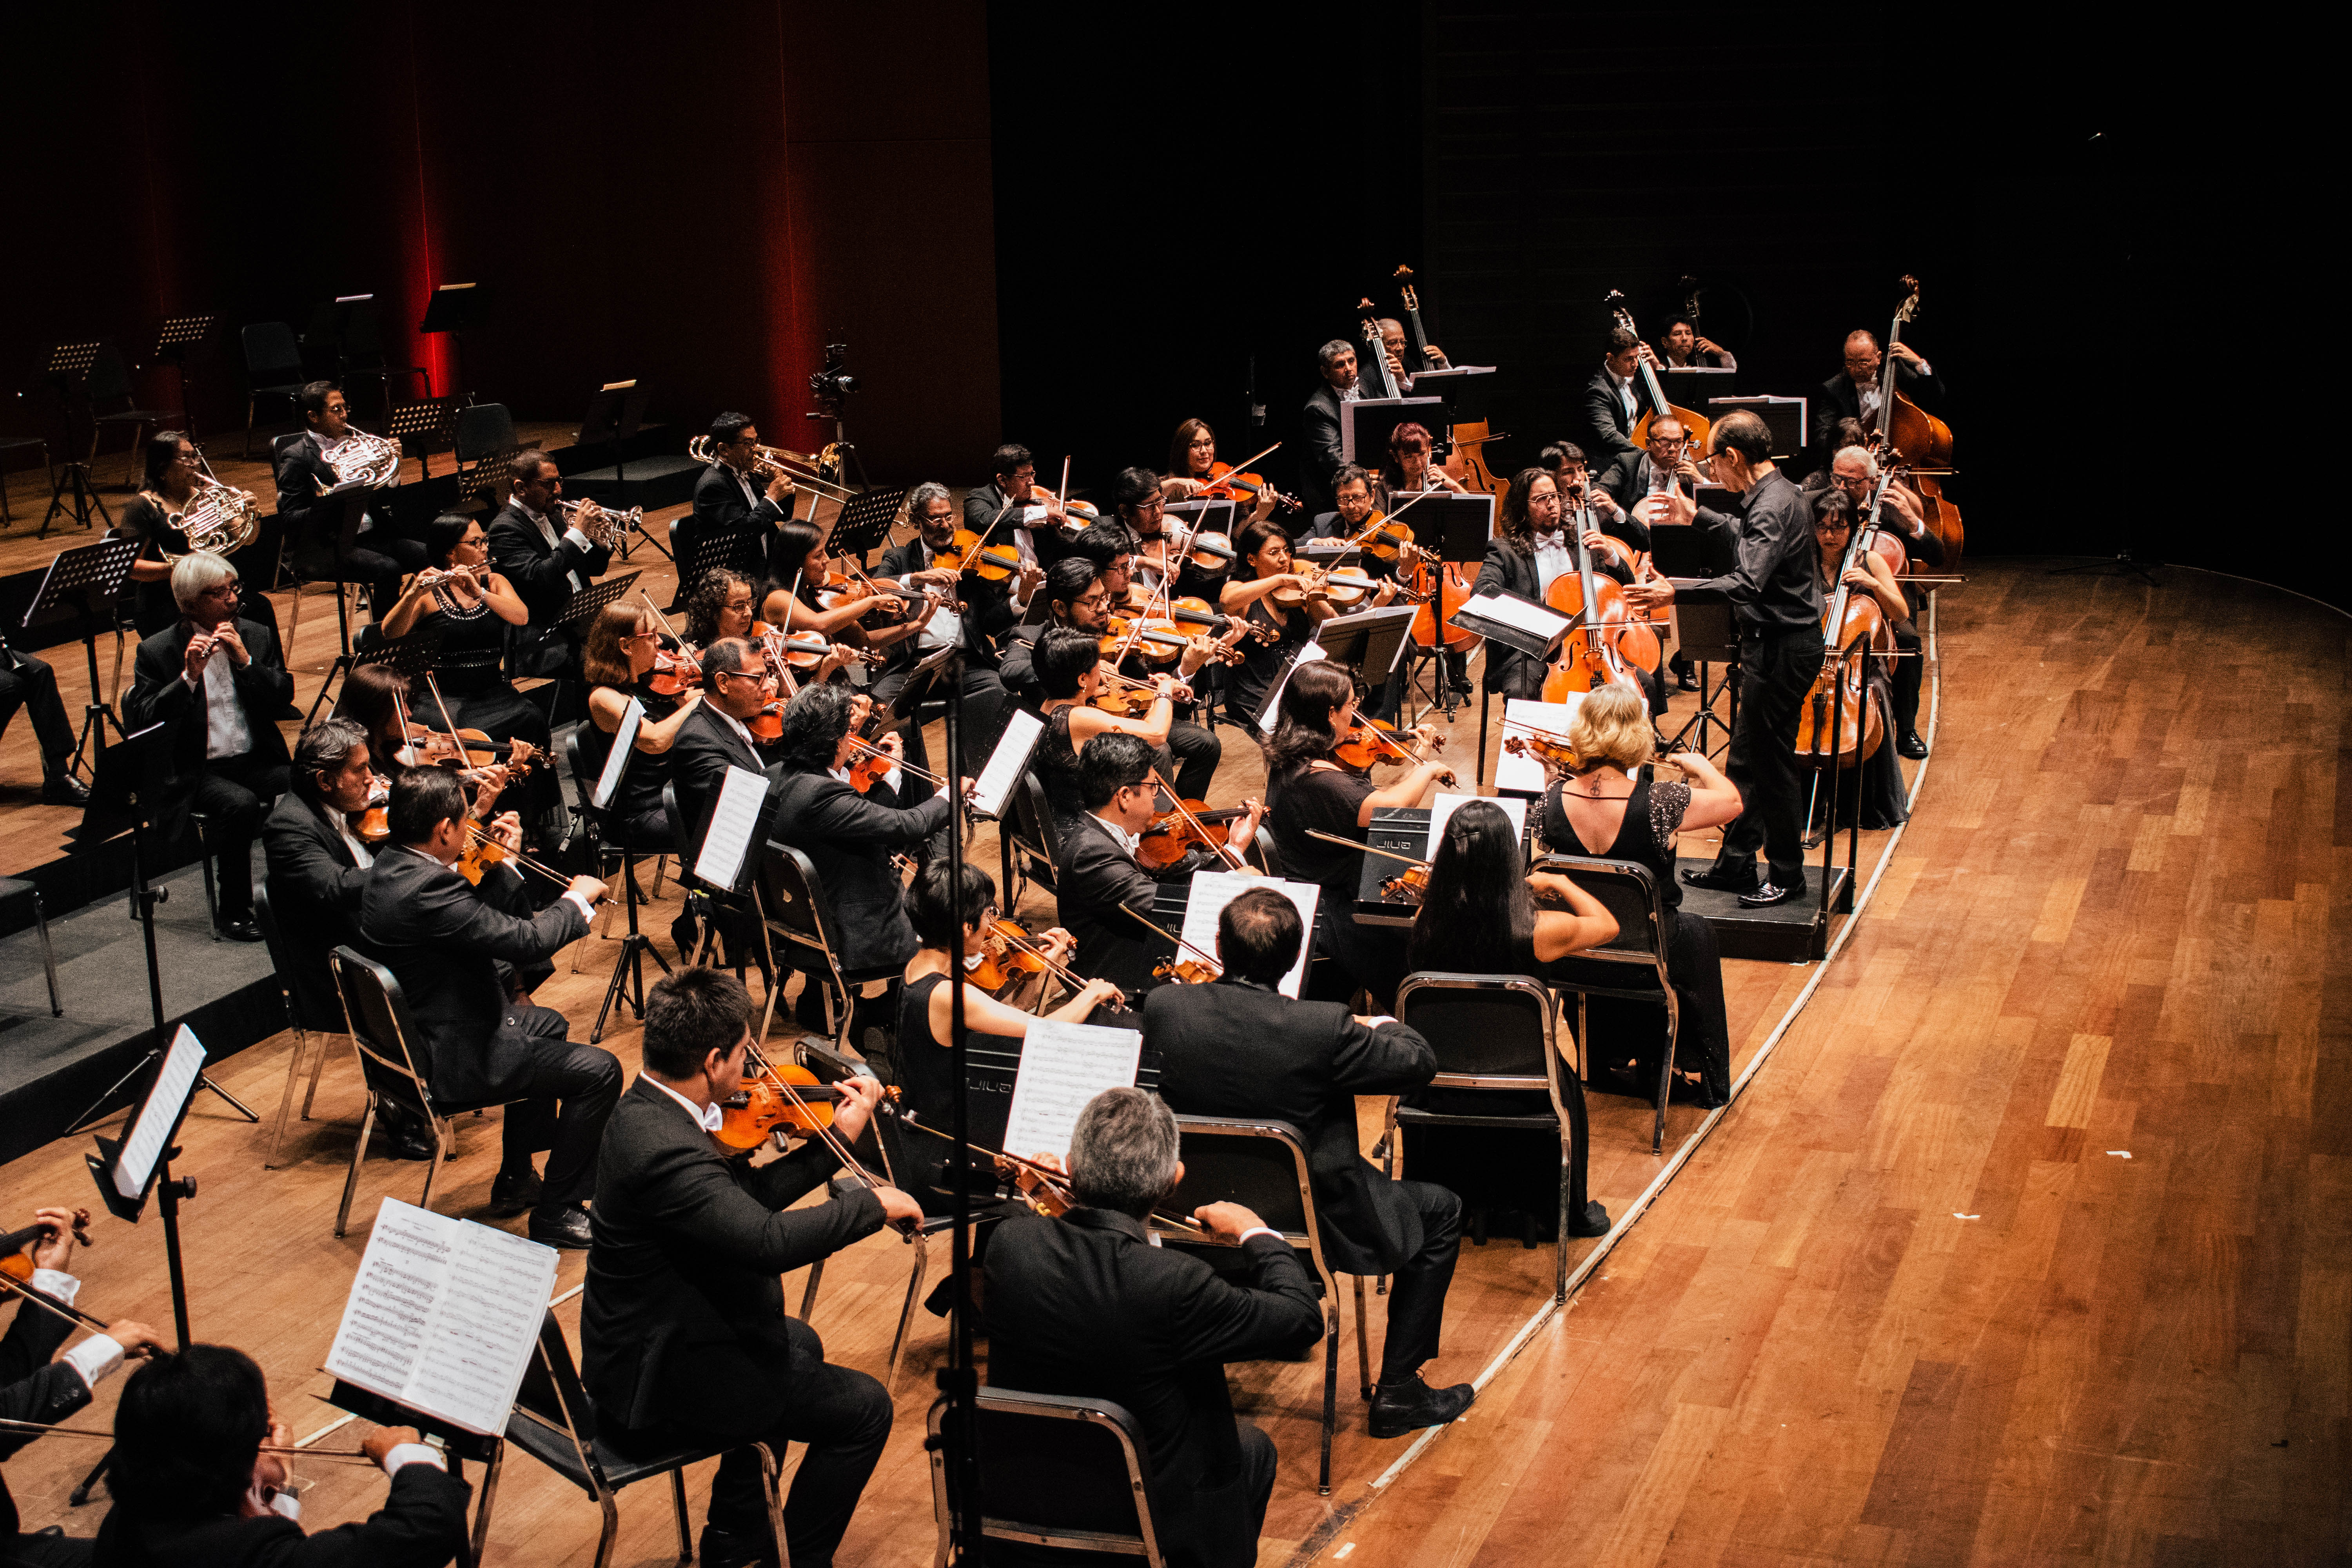 Orquesta Sinfónica Nacional del Perú presenta su concierto "MAHLER" 